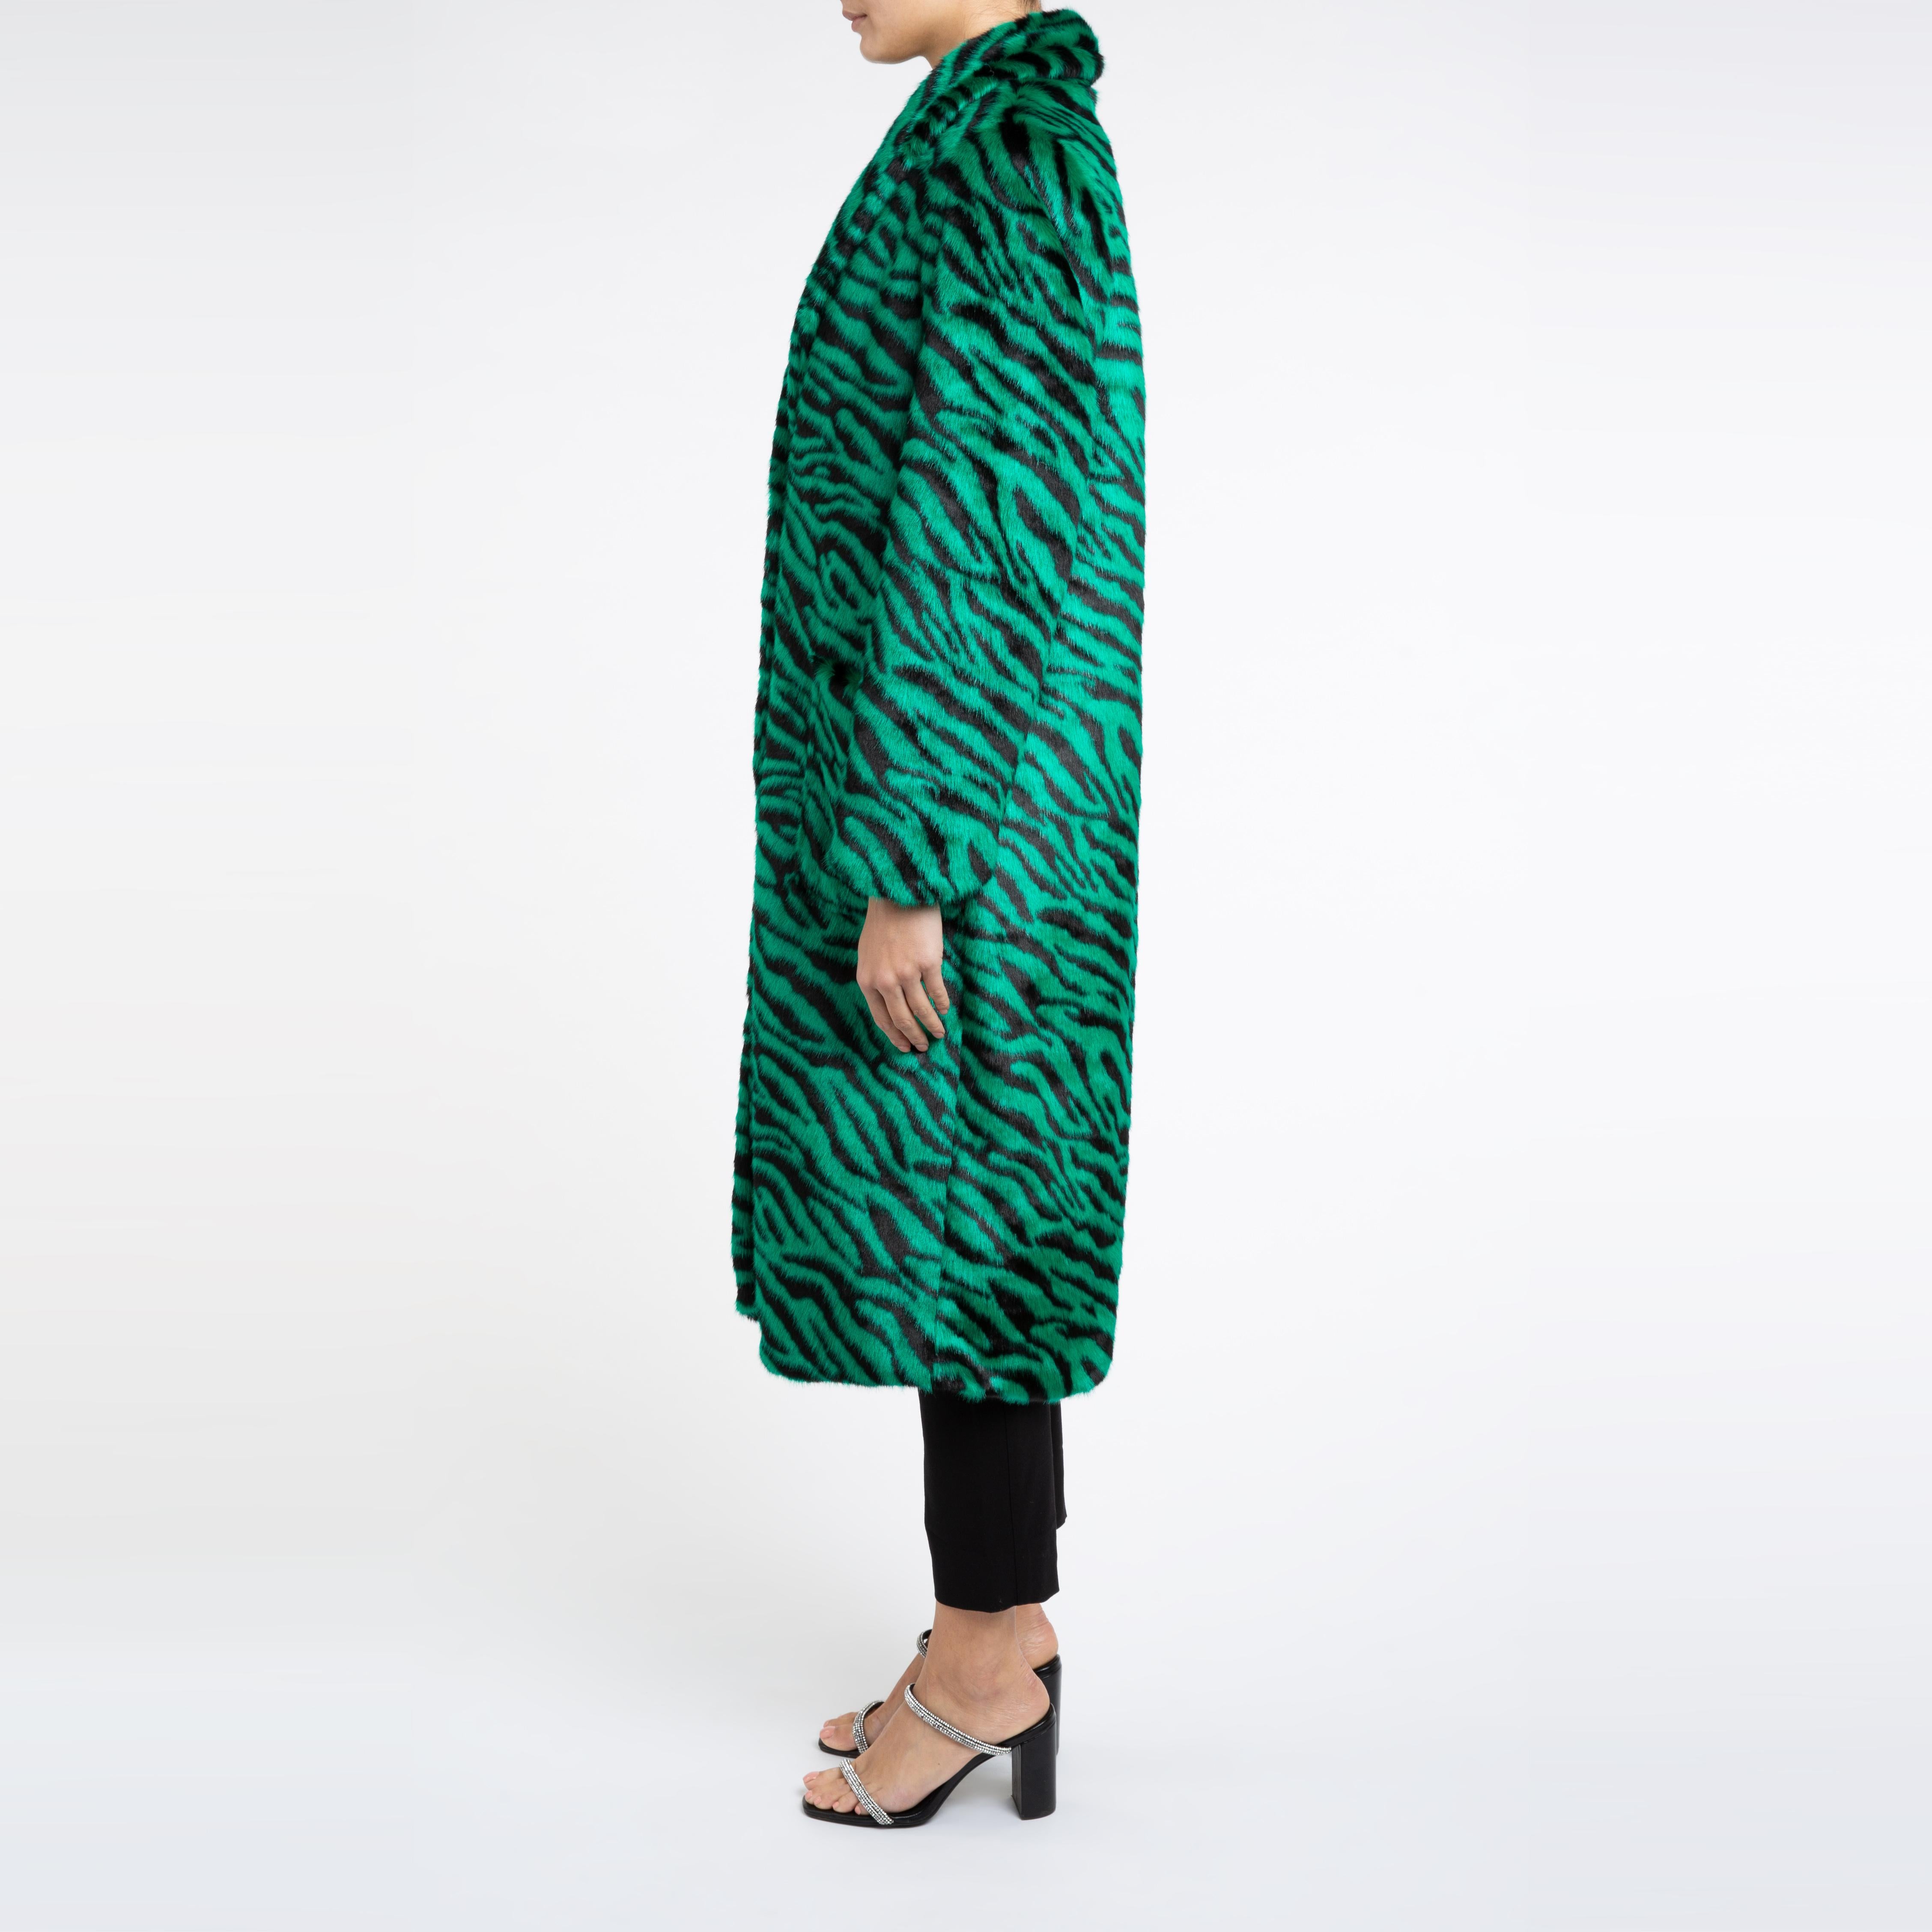 Esmeralda Kunstfell Mantel in Smaragdgrün Zebra Print Größe uk 10

Ein Mantel, den Sie sowohl zu Jeans als auch zu einem Kleid tragen können und der Sie in der kalten Jahreszeit warm hält. 
Dieses Longline-Design ist schmeichelhaft und lässt sich